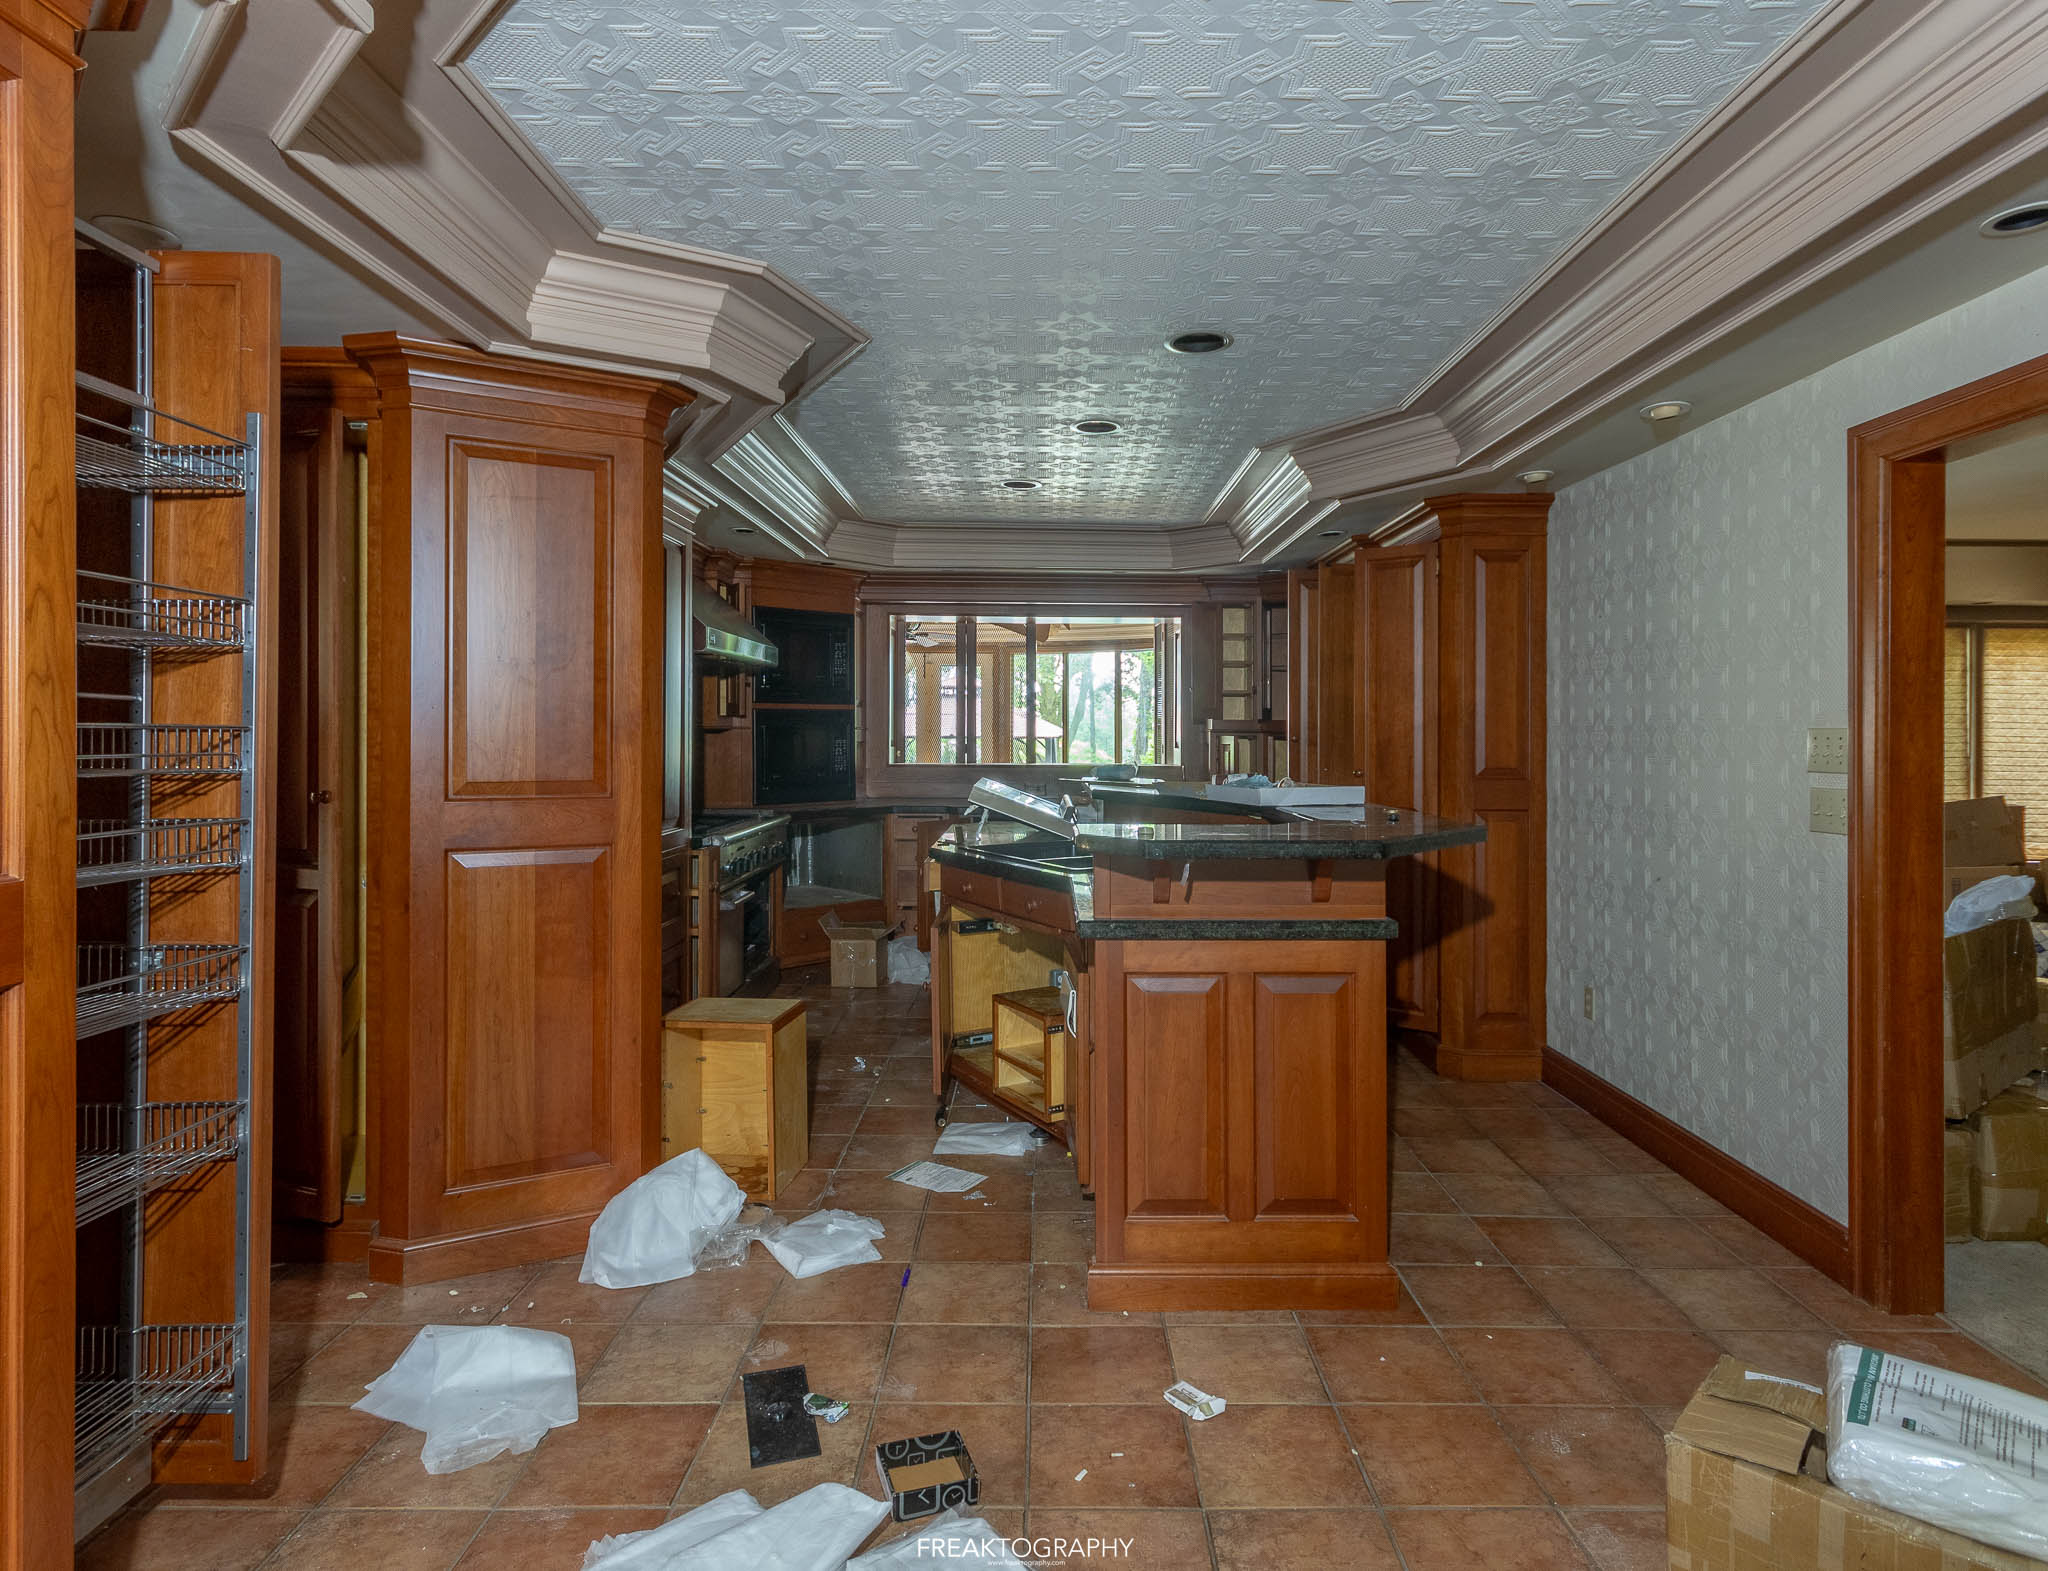 The mansion’s kitchen.